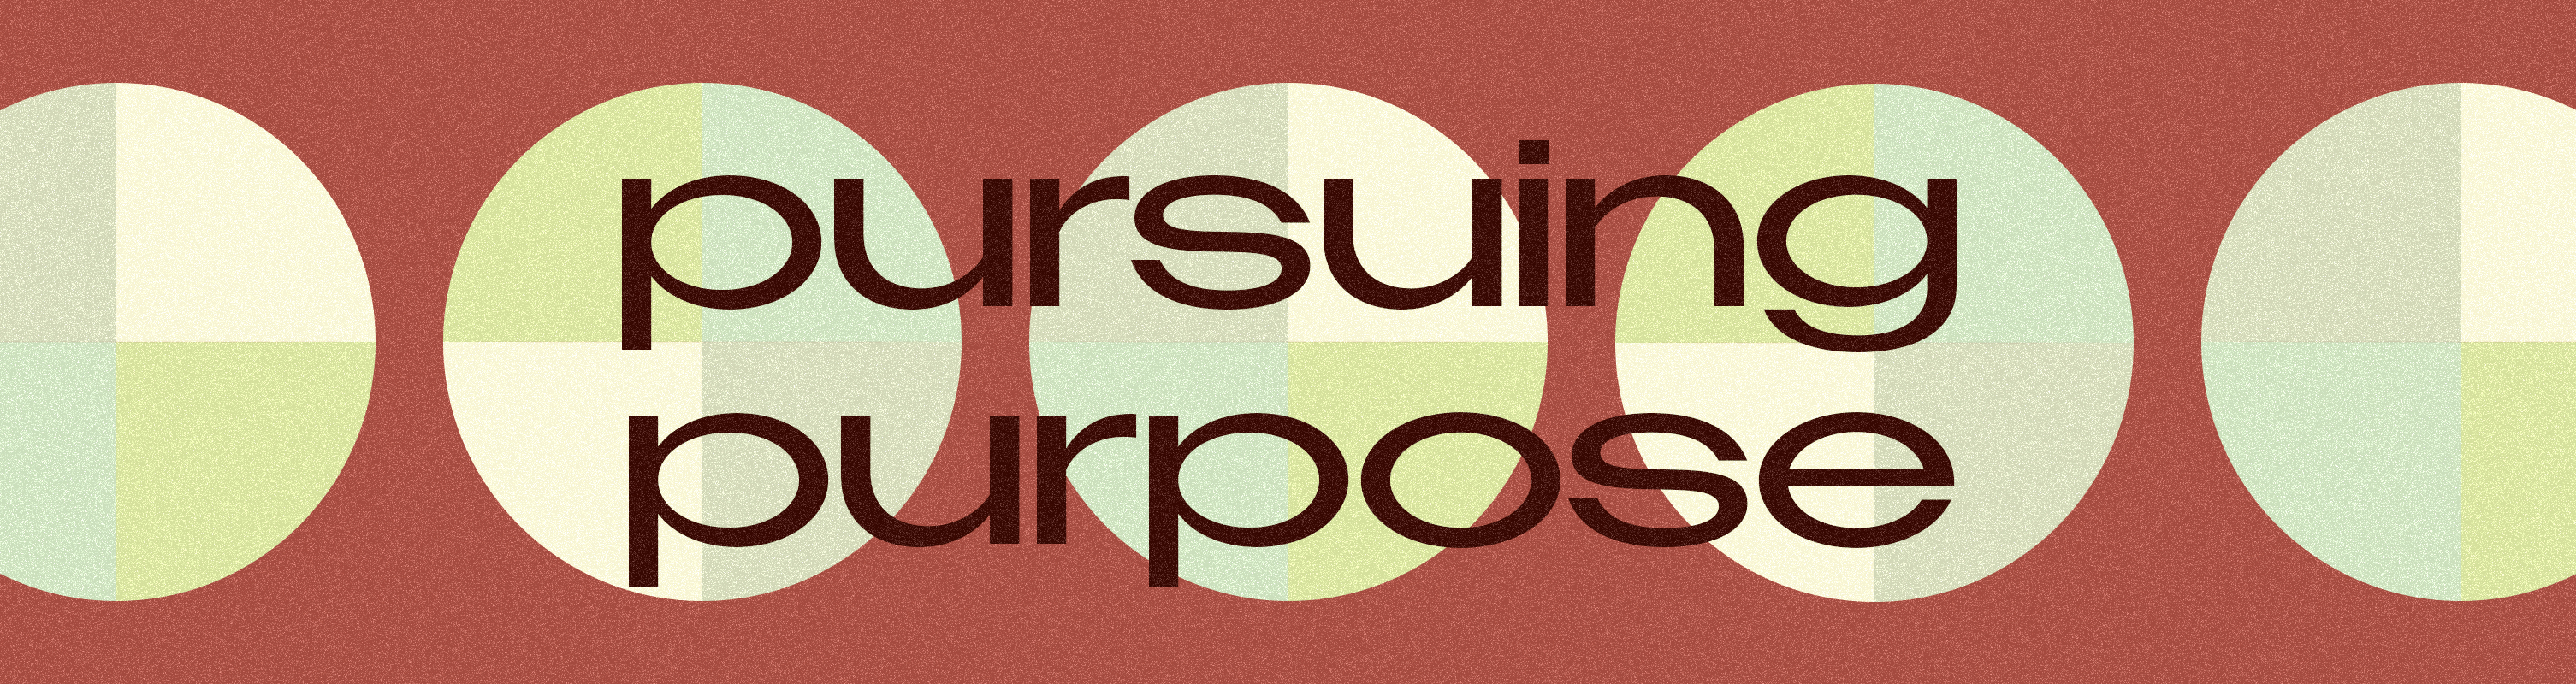 Pursuing-Purpose-WEBSITE